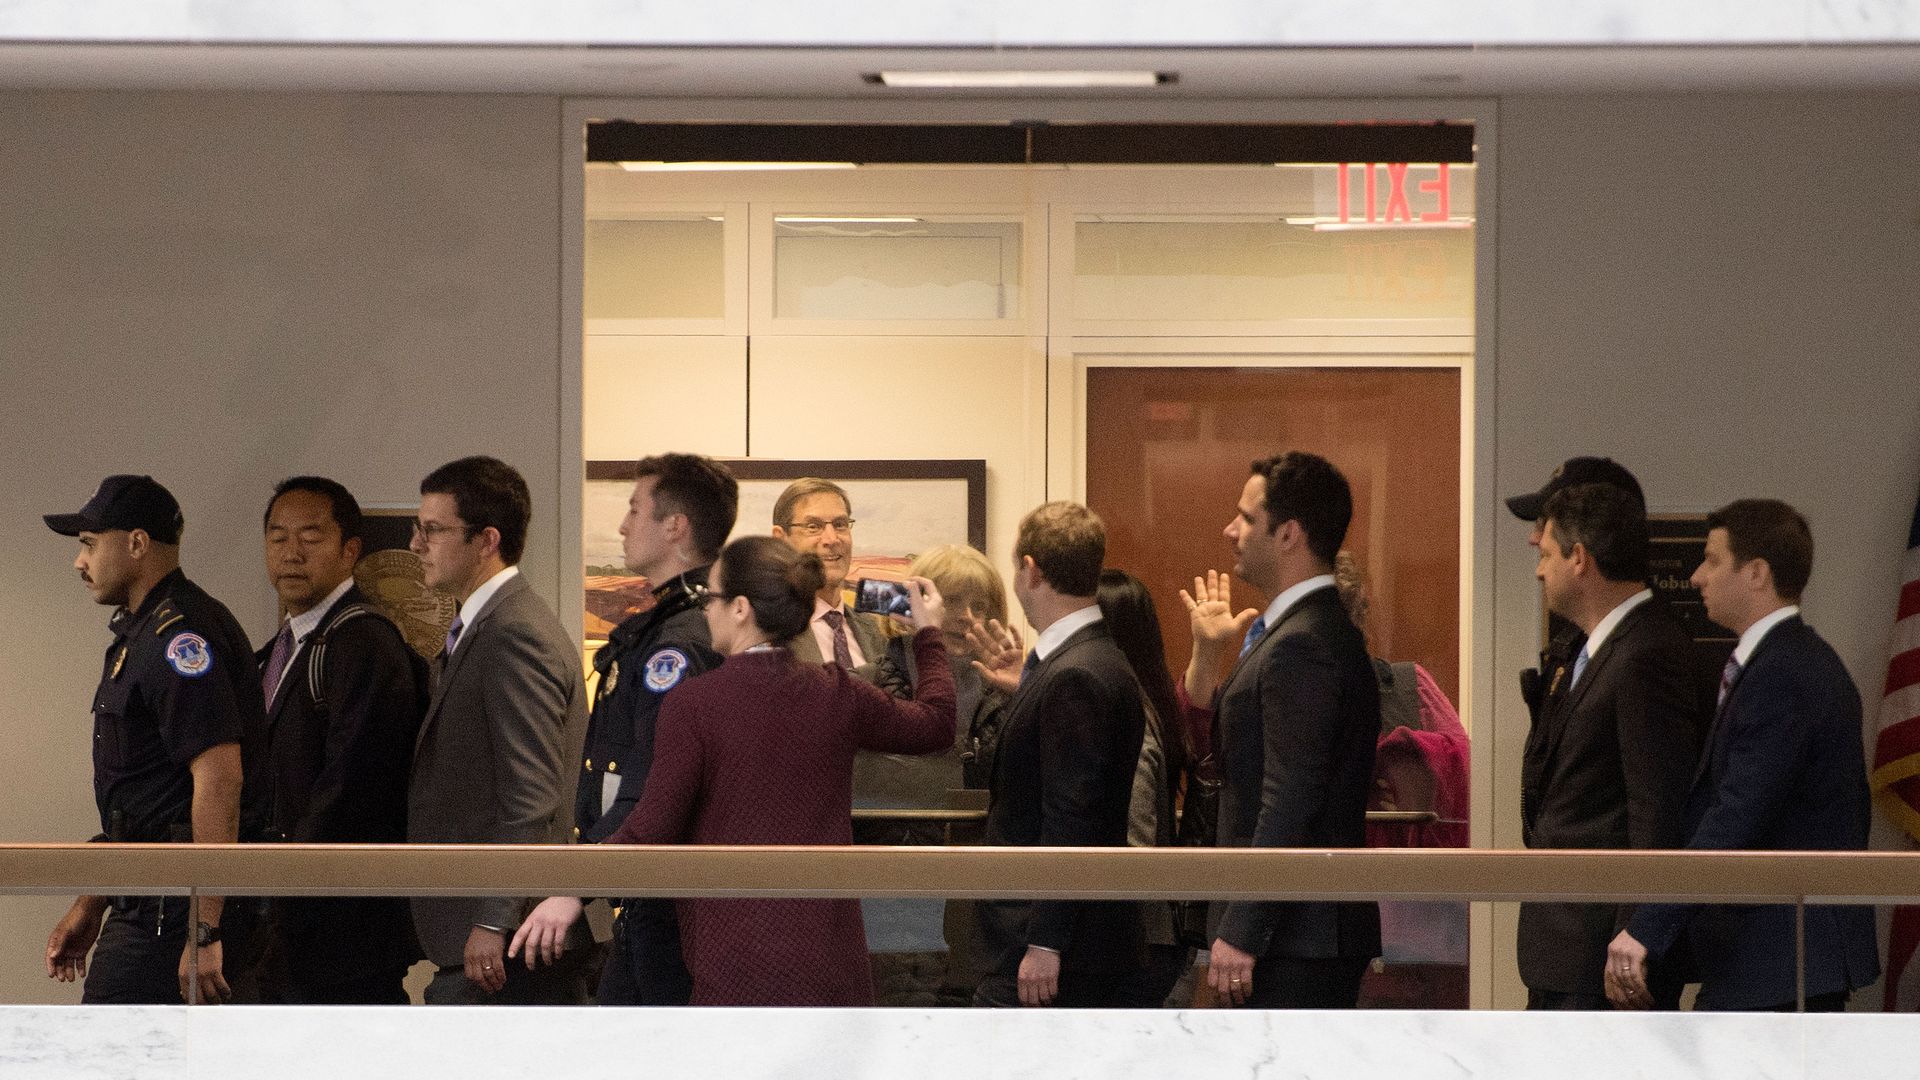 Staffers wave through a glass door at Mark Zuckerberg as he walks by